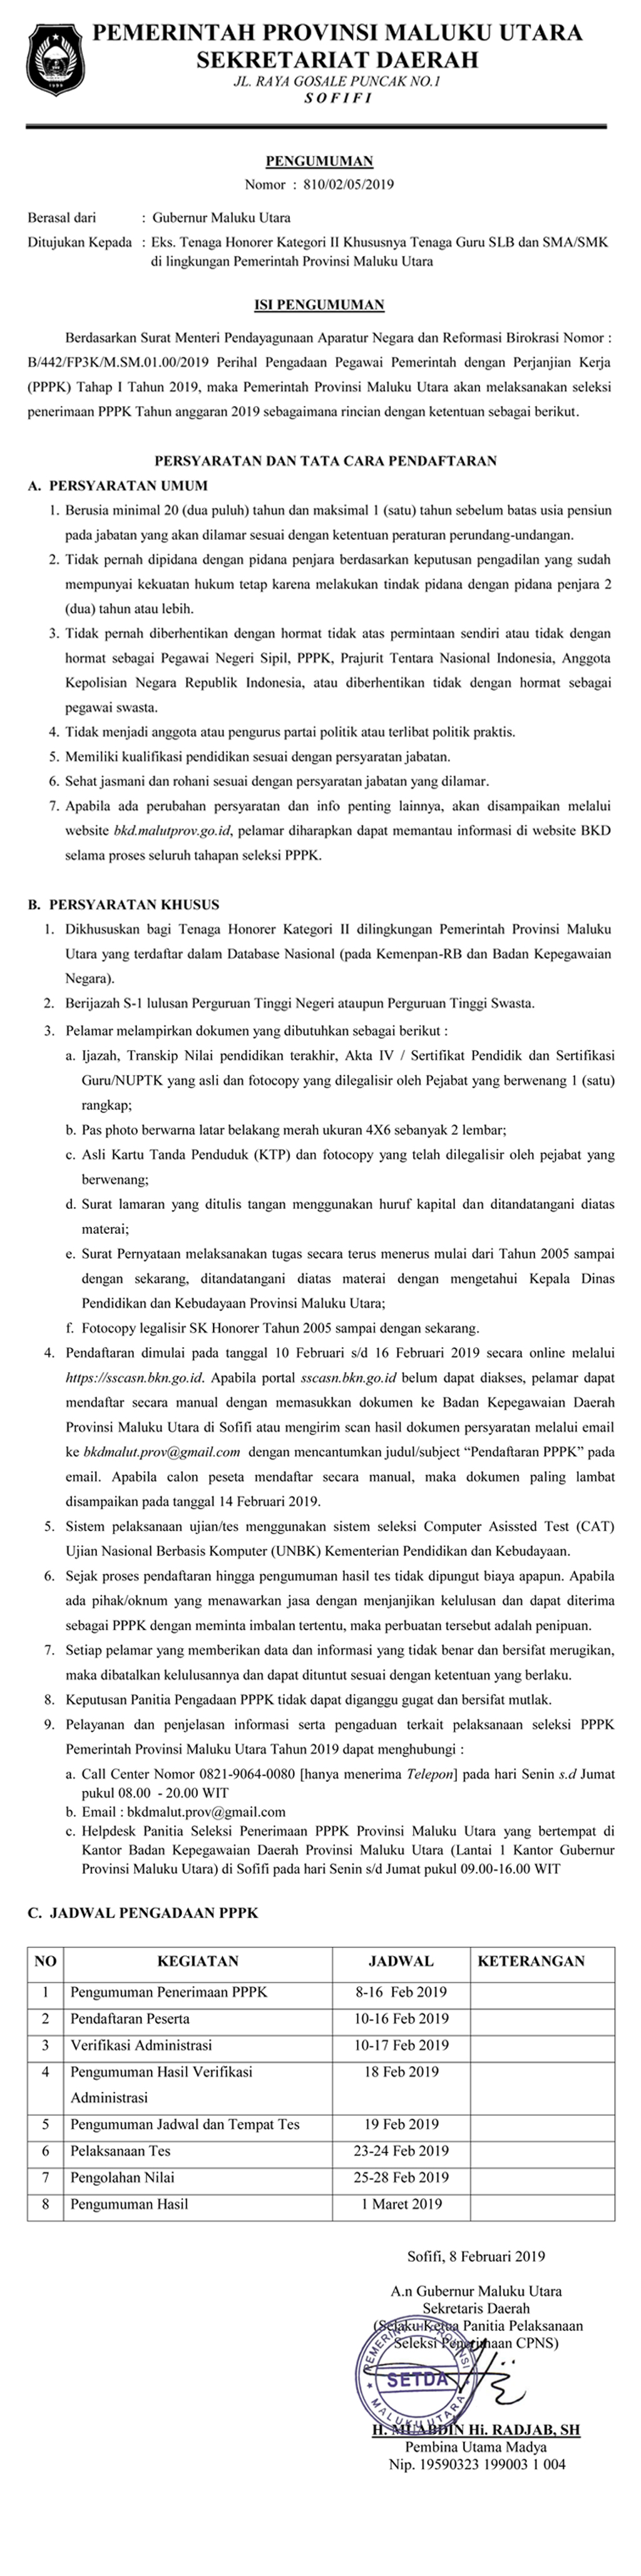 Bkd Provinsi Maluku Utara Pengumuman Penerimaan Pendaftaran Seleksi Pppk Tahap I Provinsi Maluku Utara Tahun 2019